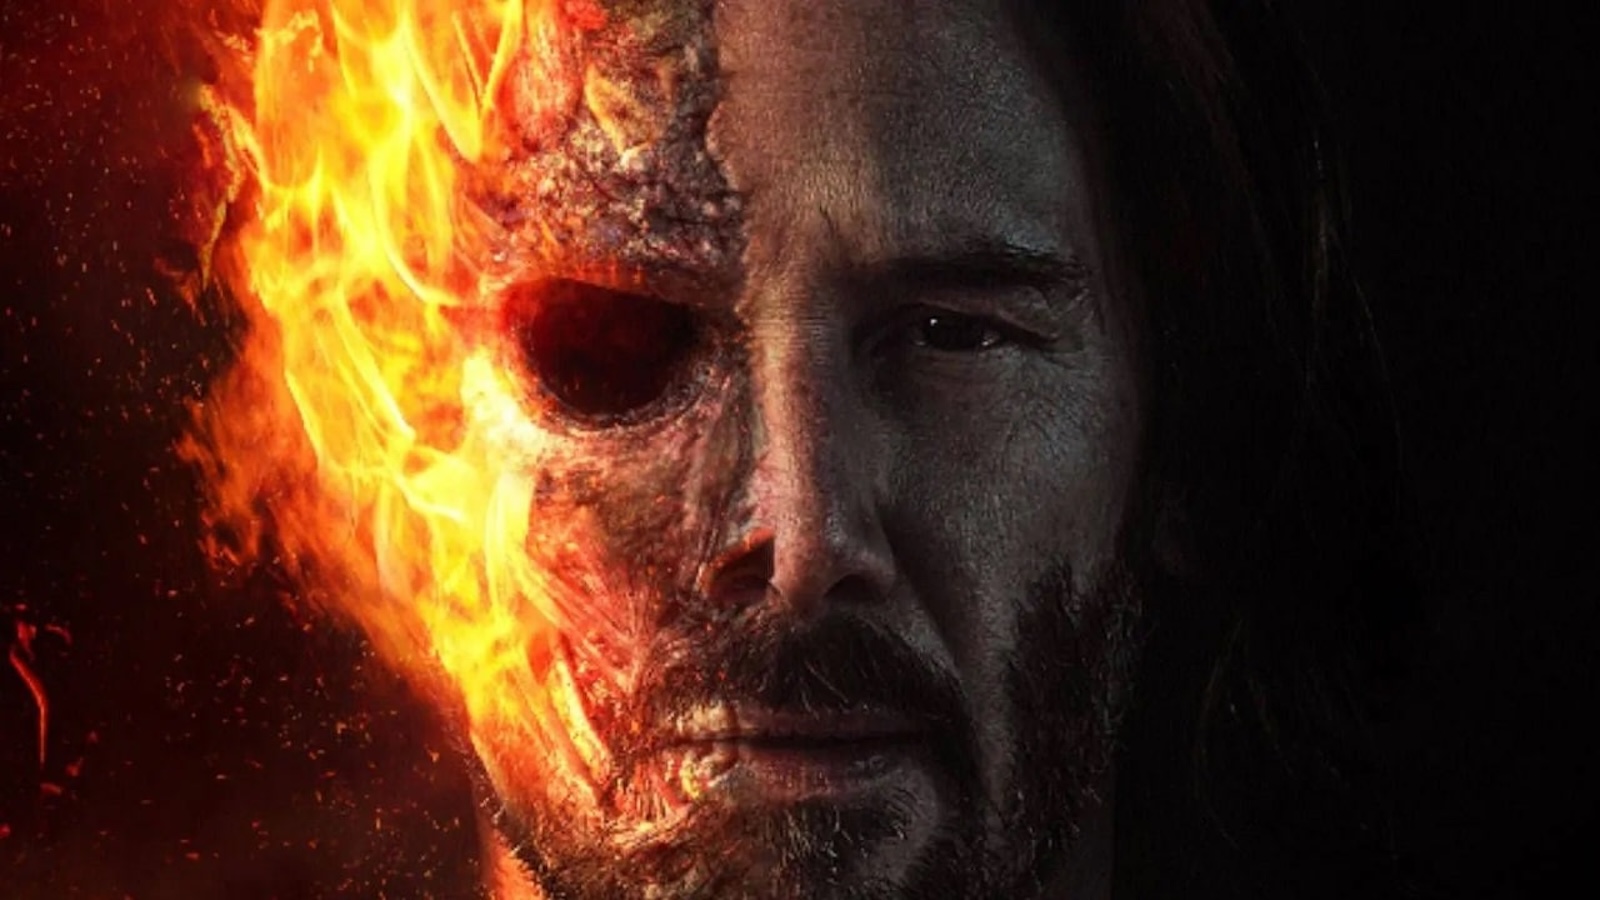 Keanu Reeves star di un nuovo film su Ghost Rider? I fan impazziscono in rete